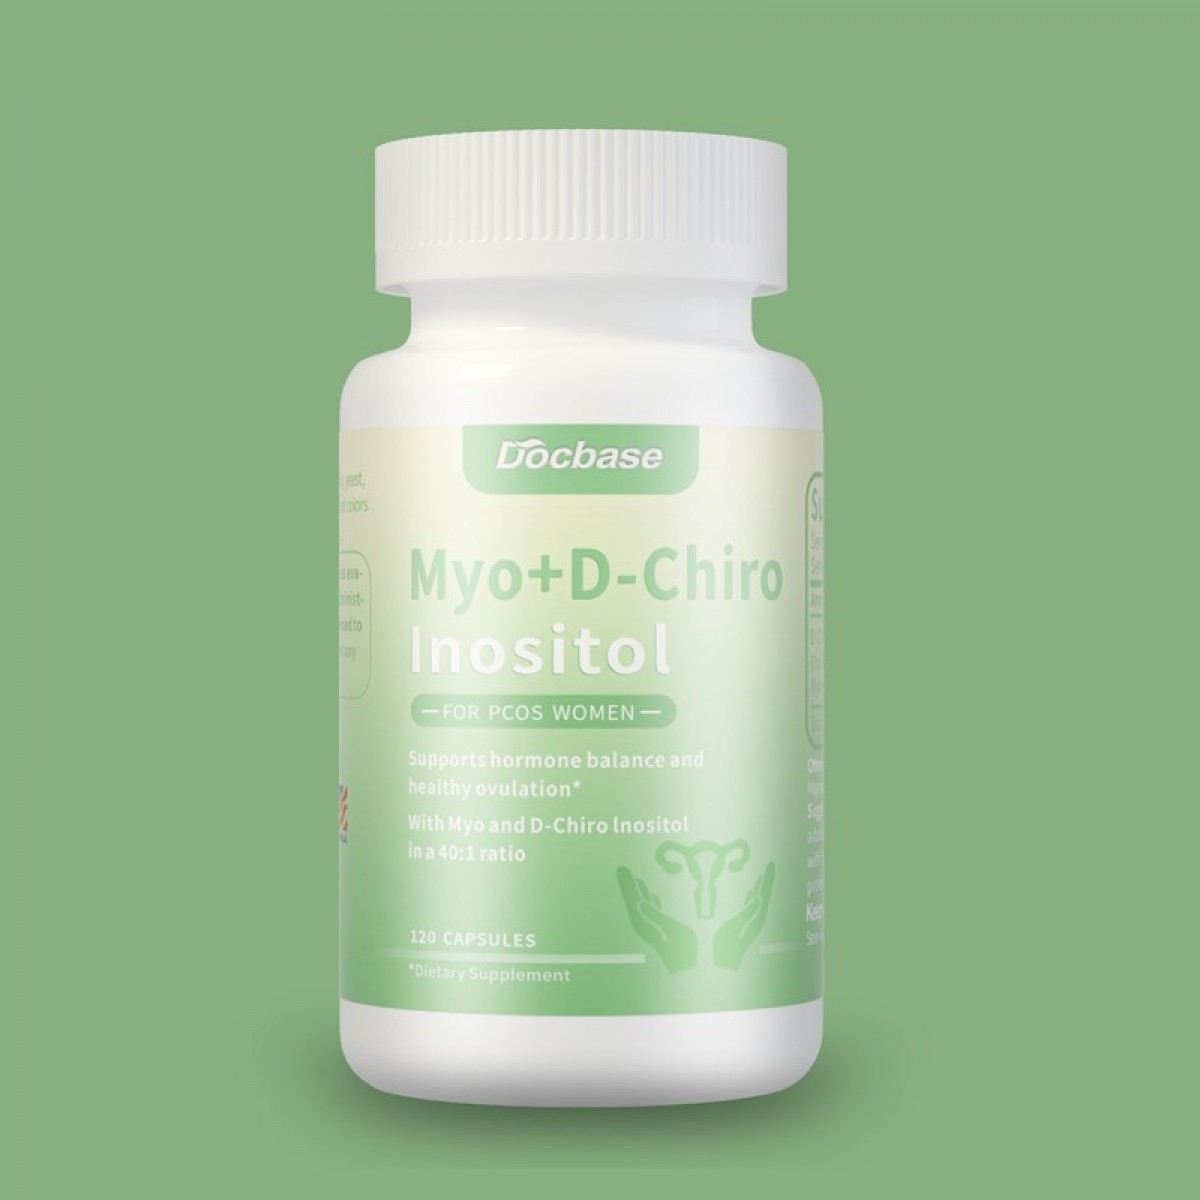 Docbase｜Myo Inositol & D-Chiro Inositol (612.5mg - 120 Capsules) | Hormone Balance for Women* | 